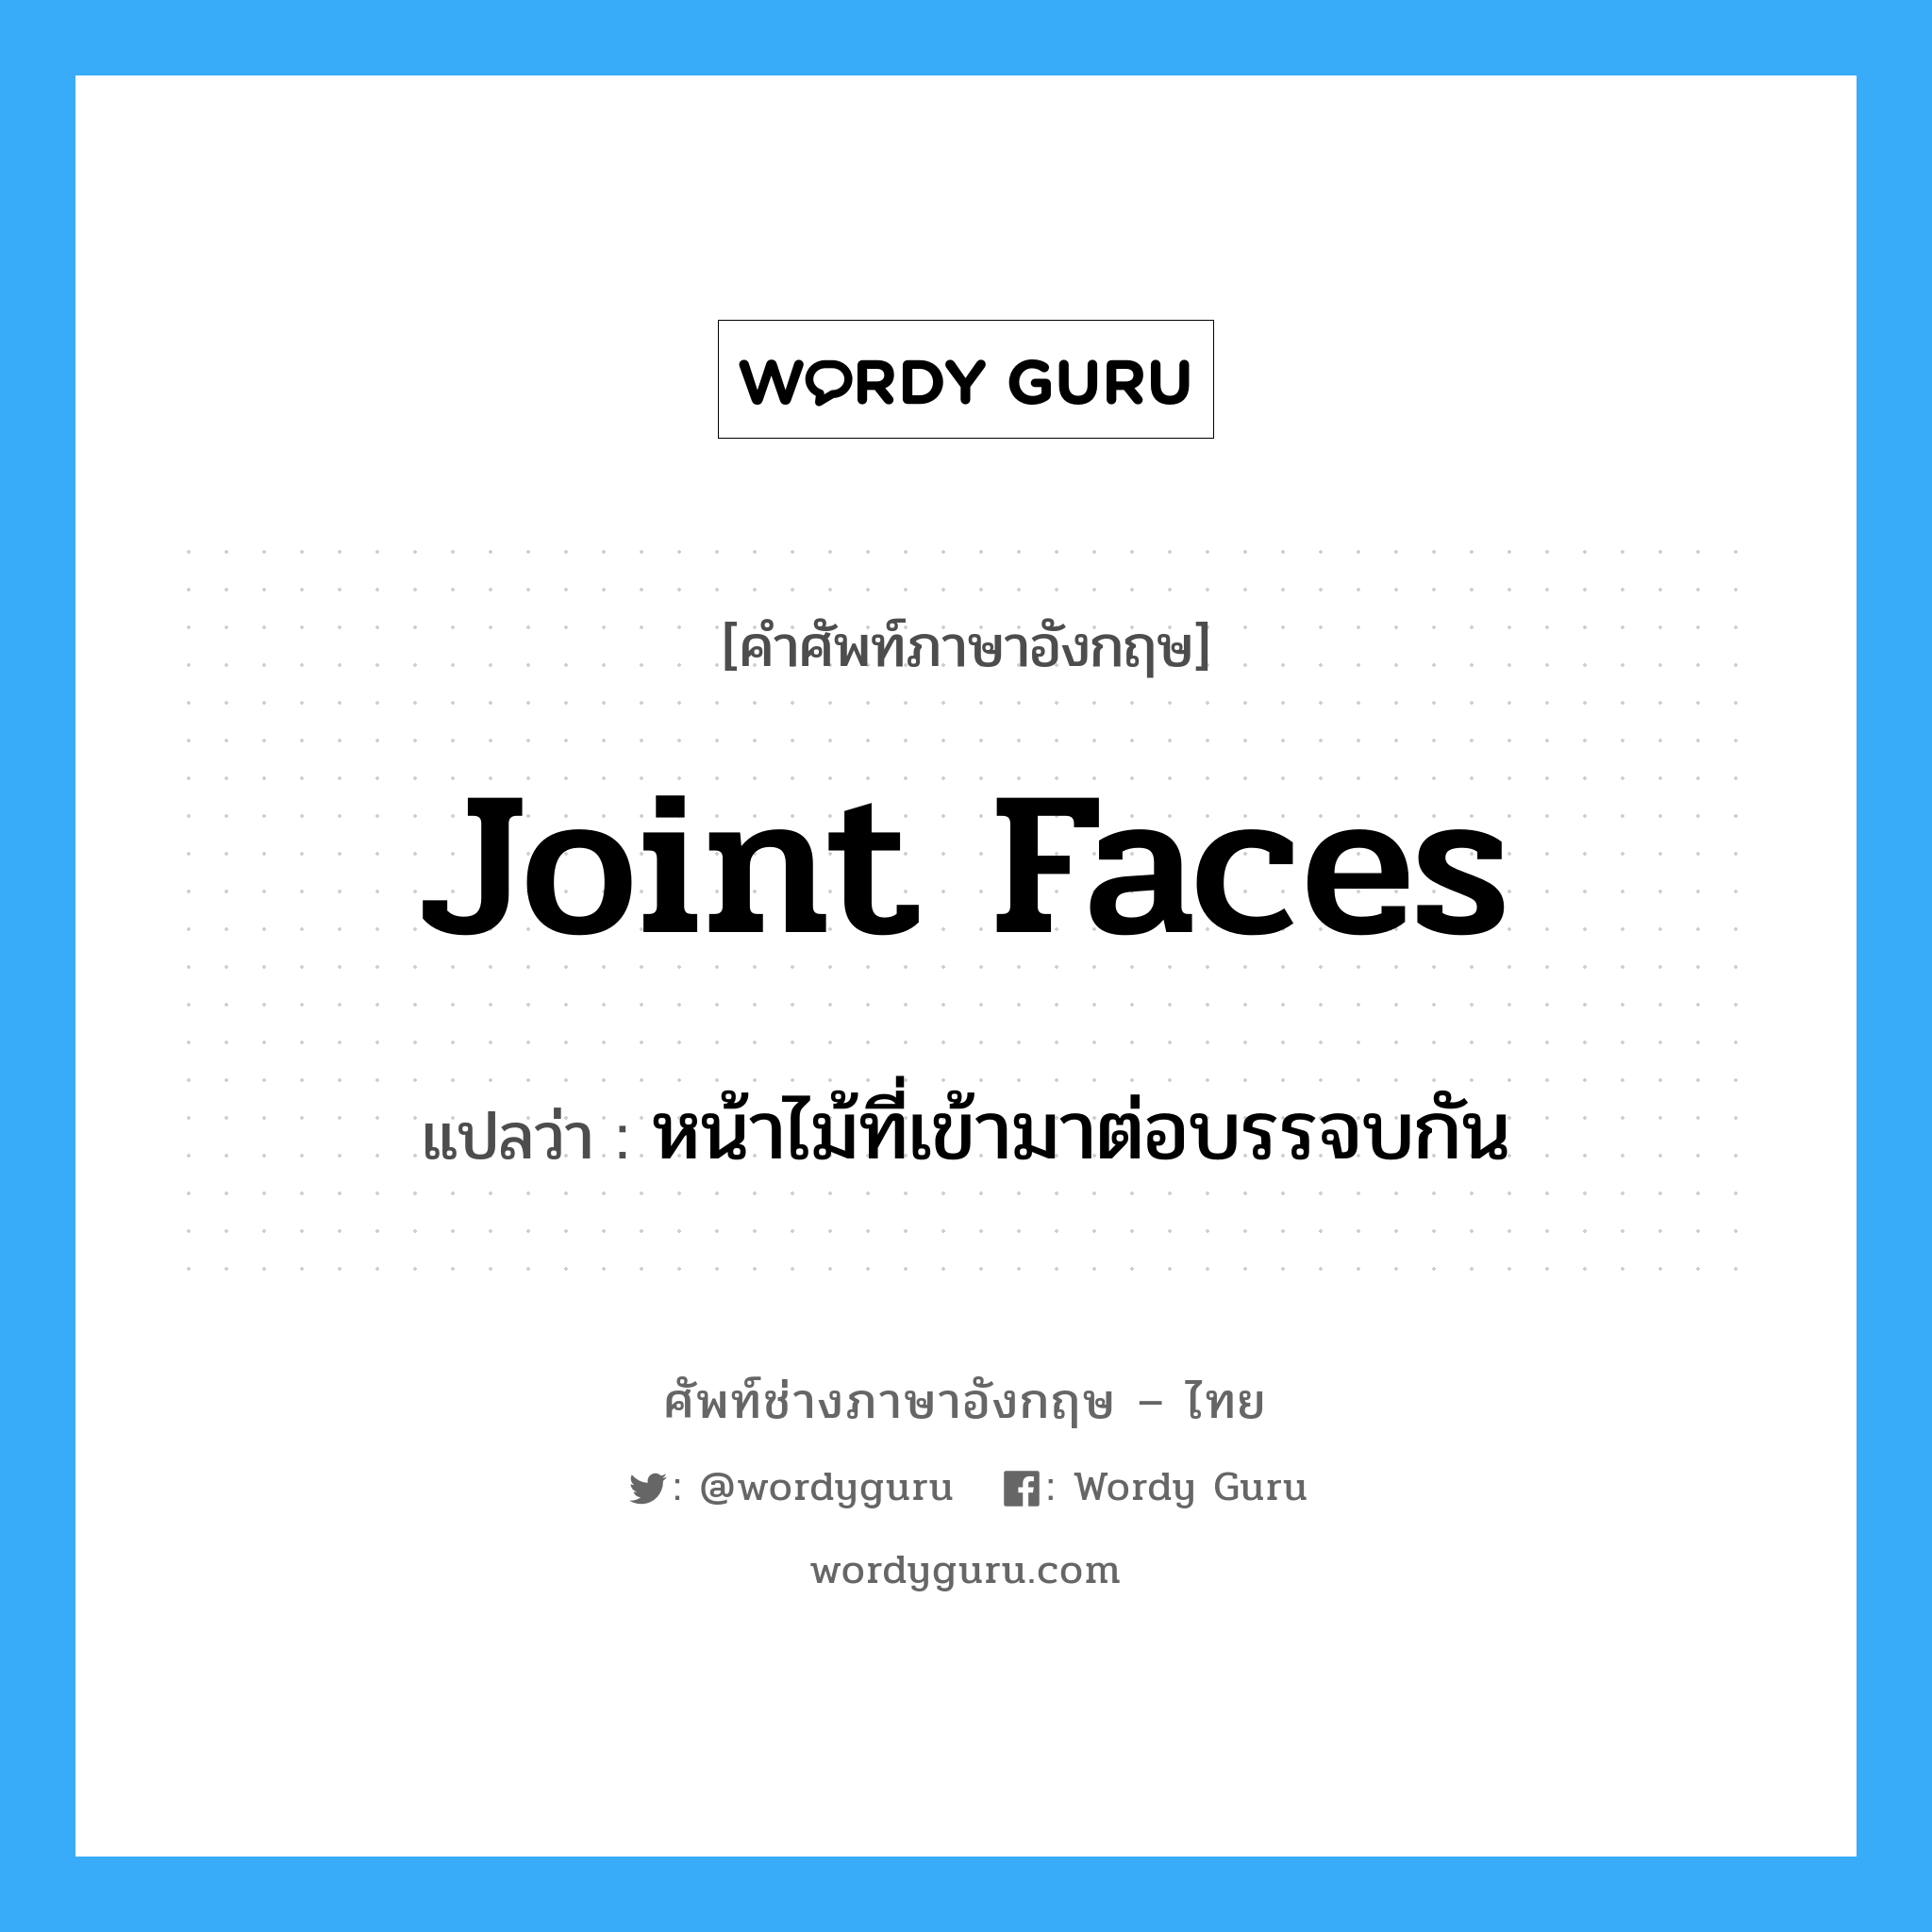 joint faces แปลว่า?, คำศัพท์ช่างภาษาอังกฤษ - ไทย joint faces คำศัพท์ภาษาอังกฤษ joint faces แปลว่า หน้าไม้ที่เข้ามาต่อบรรจบกัน